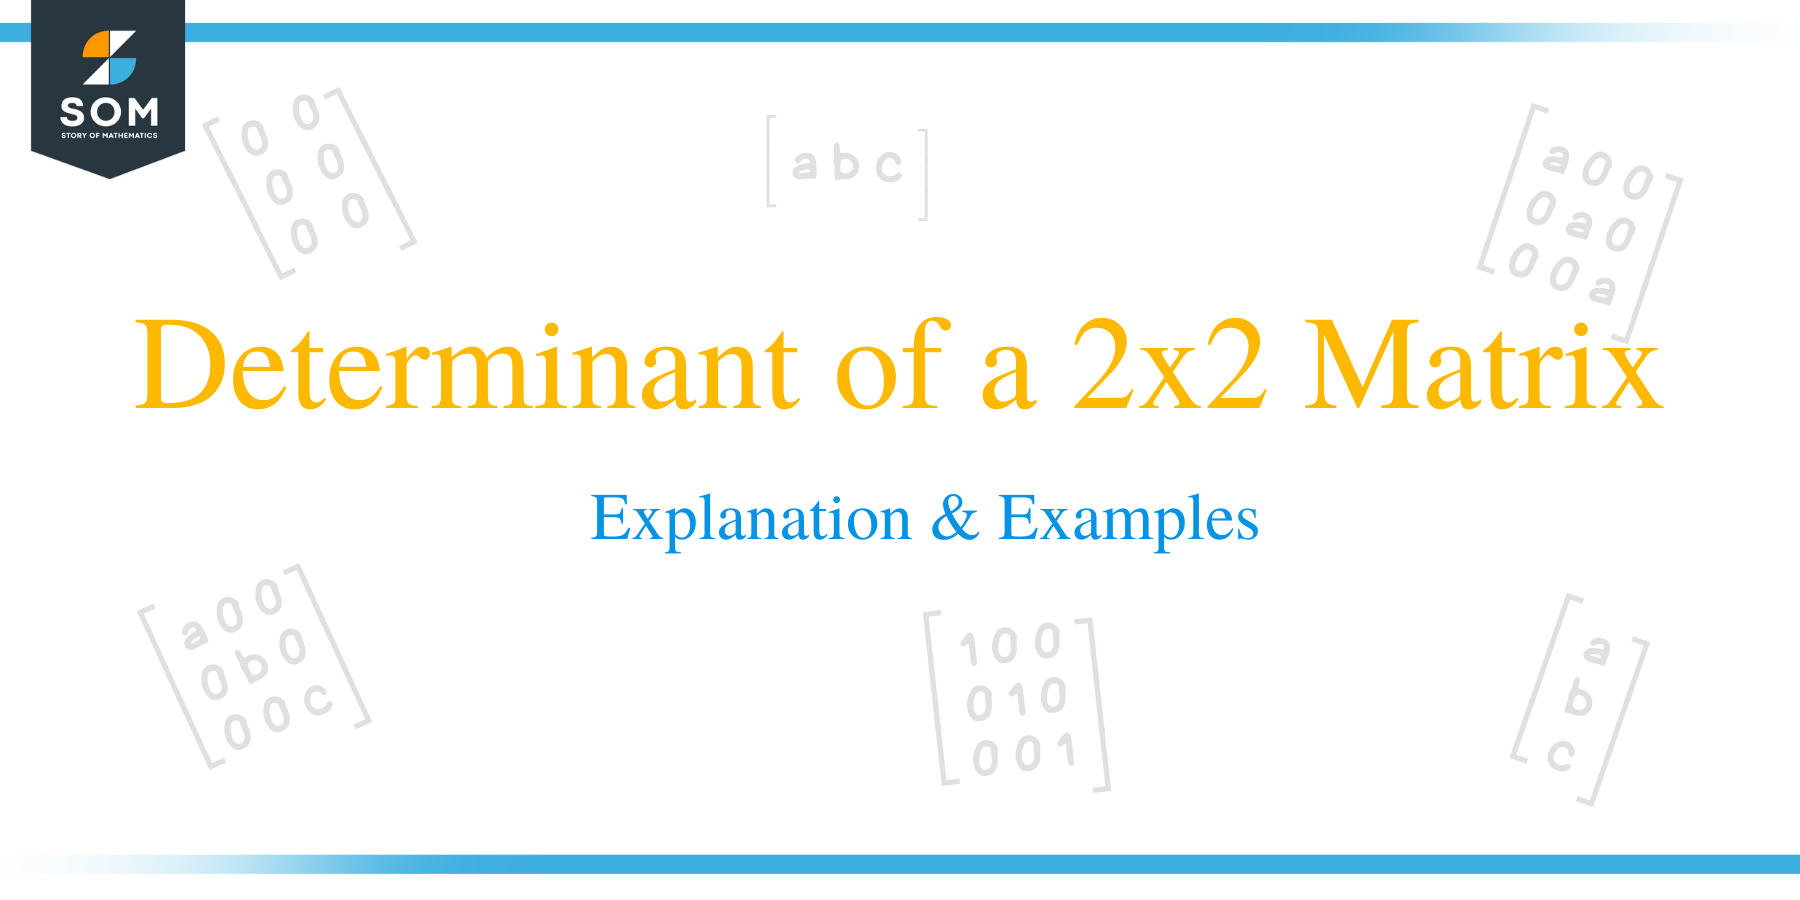 Determinant of a 2 x 2 Matrix